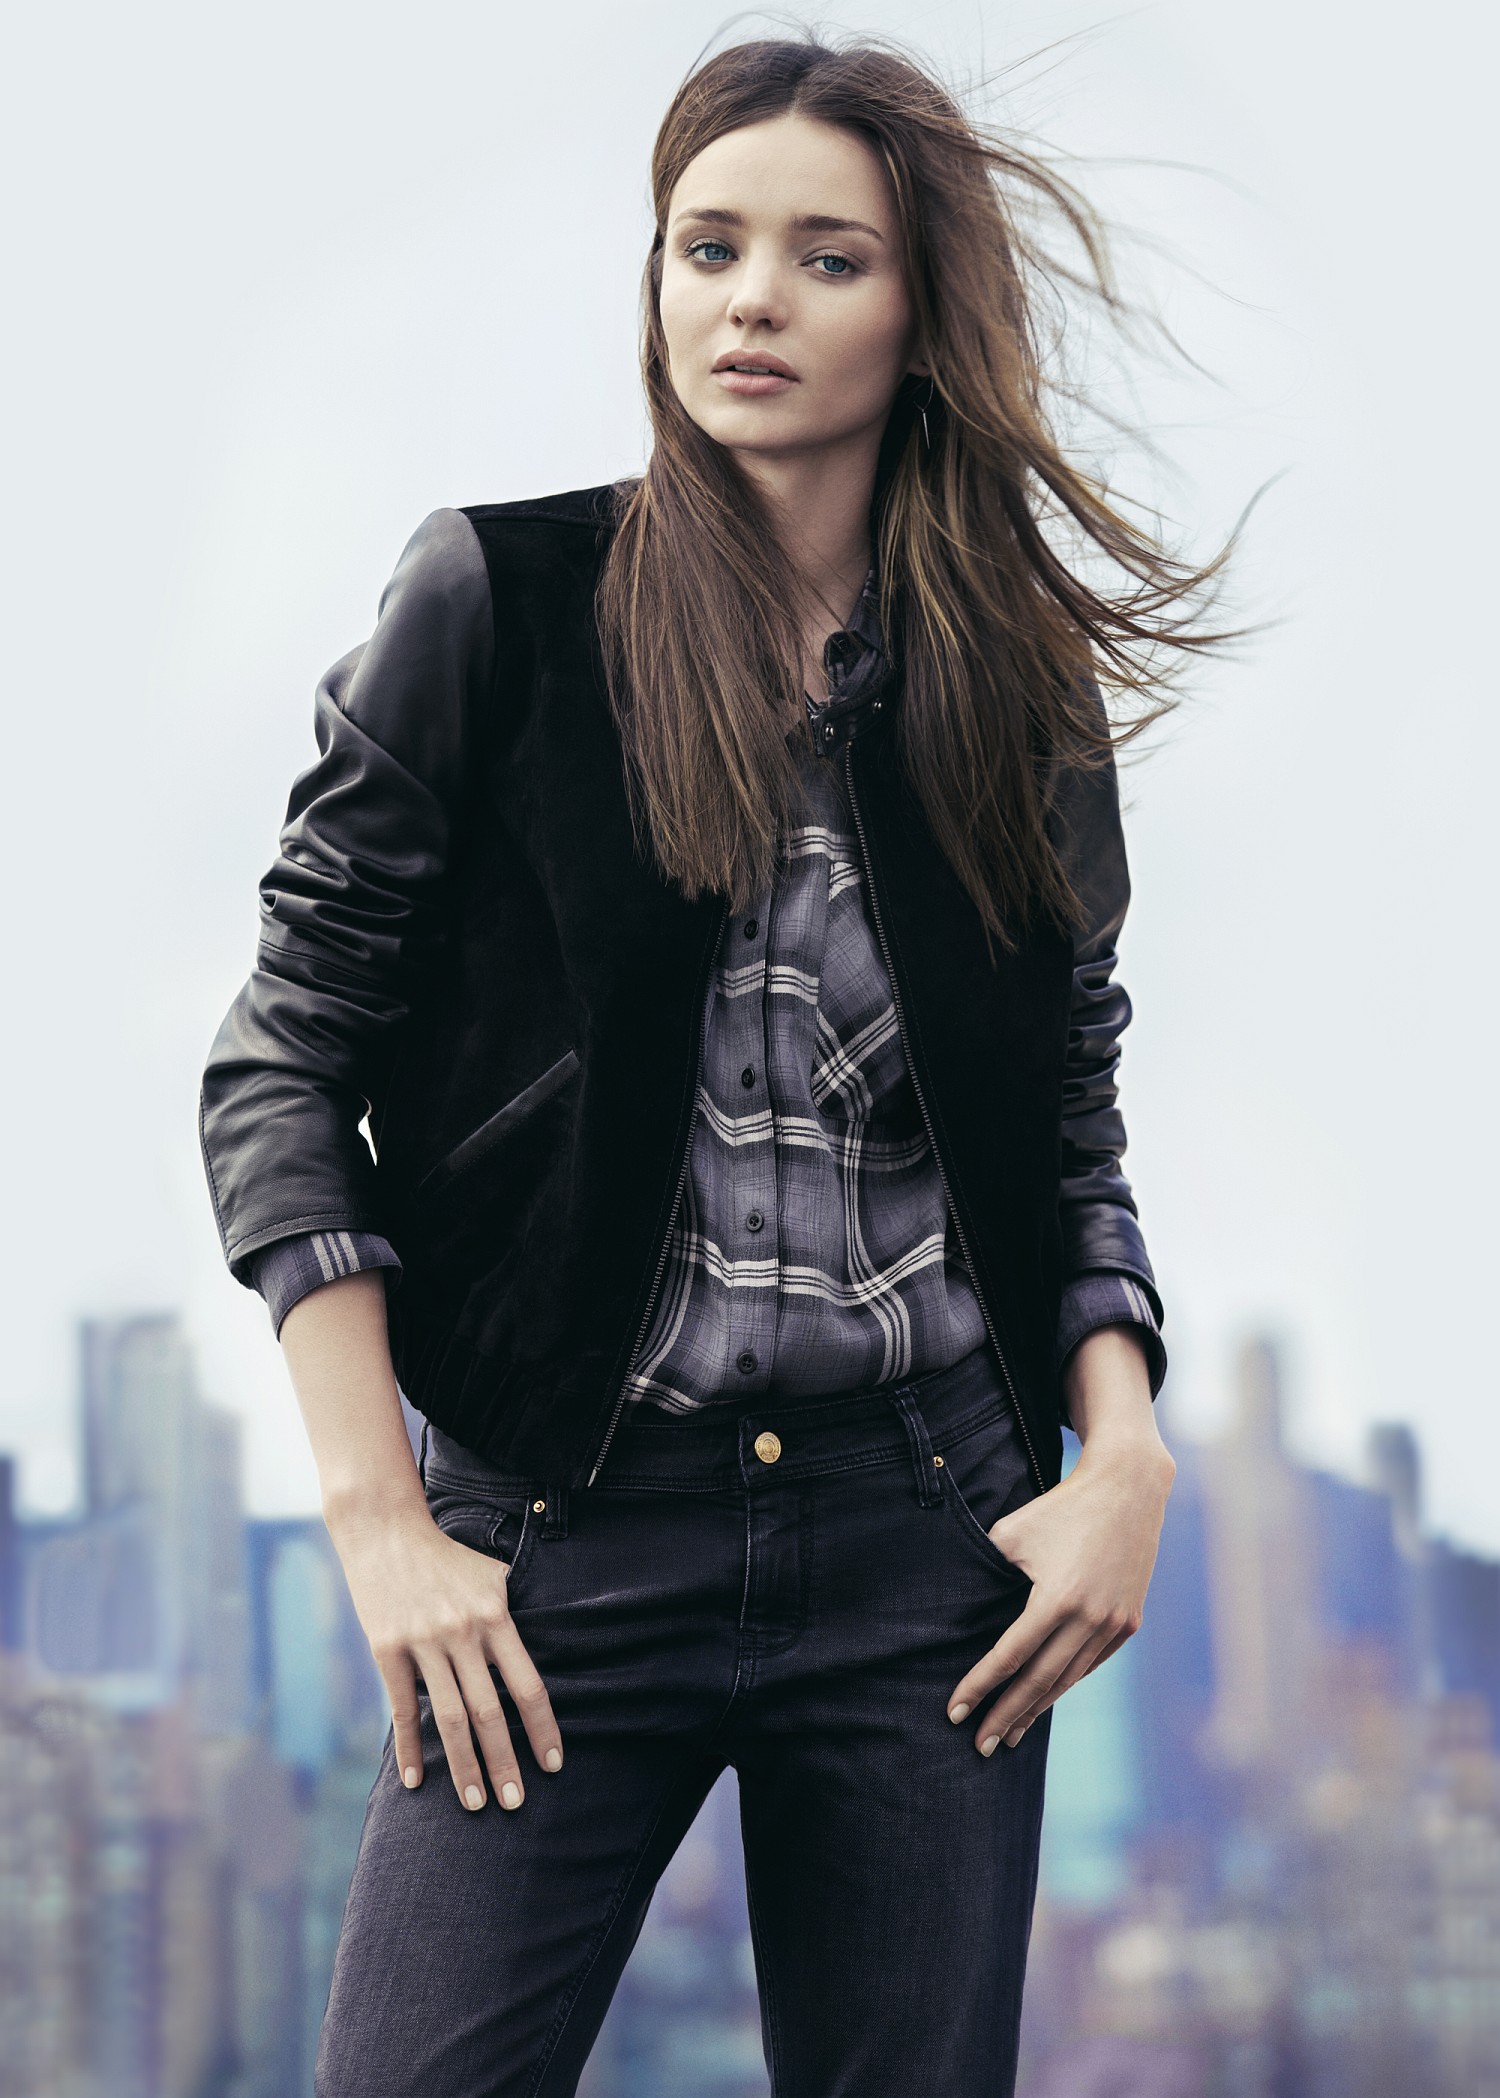 Black leather bomber jacket womens – Modern fashion jacket photo blog